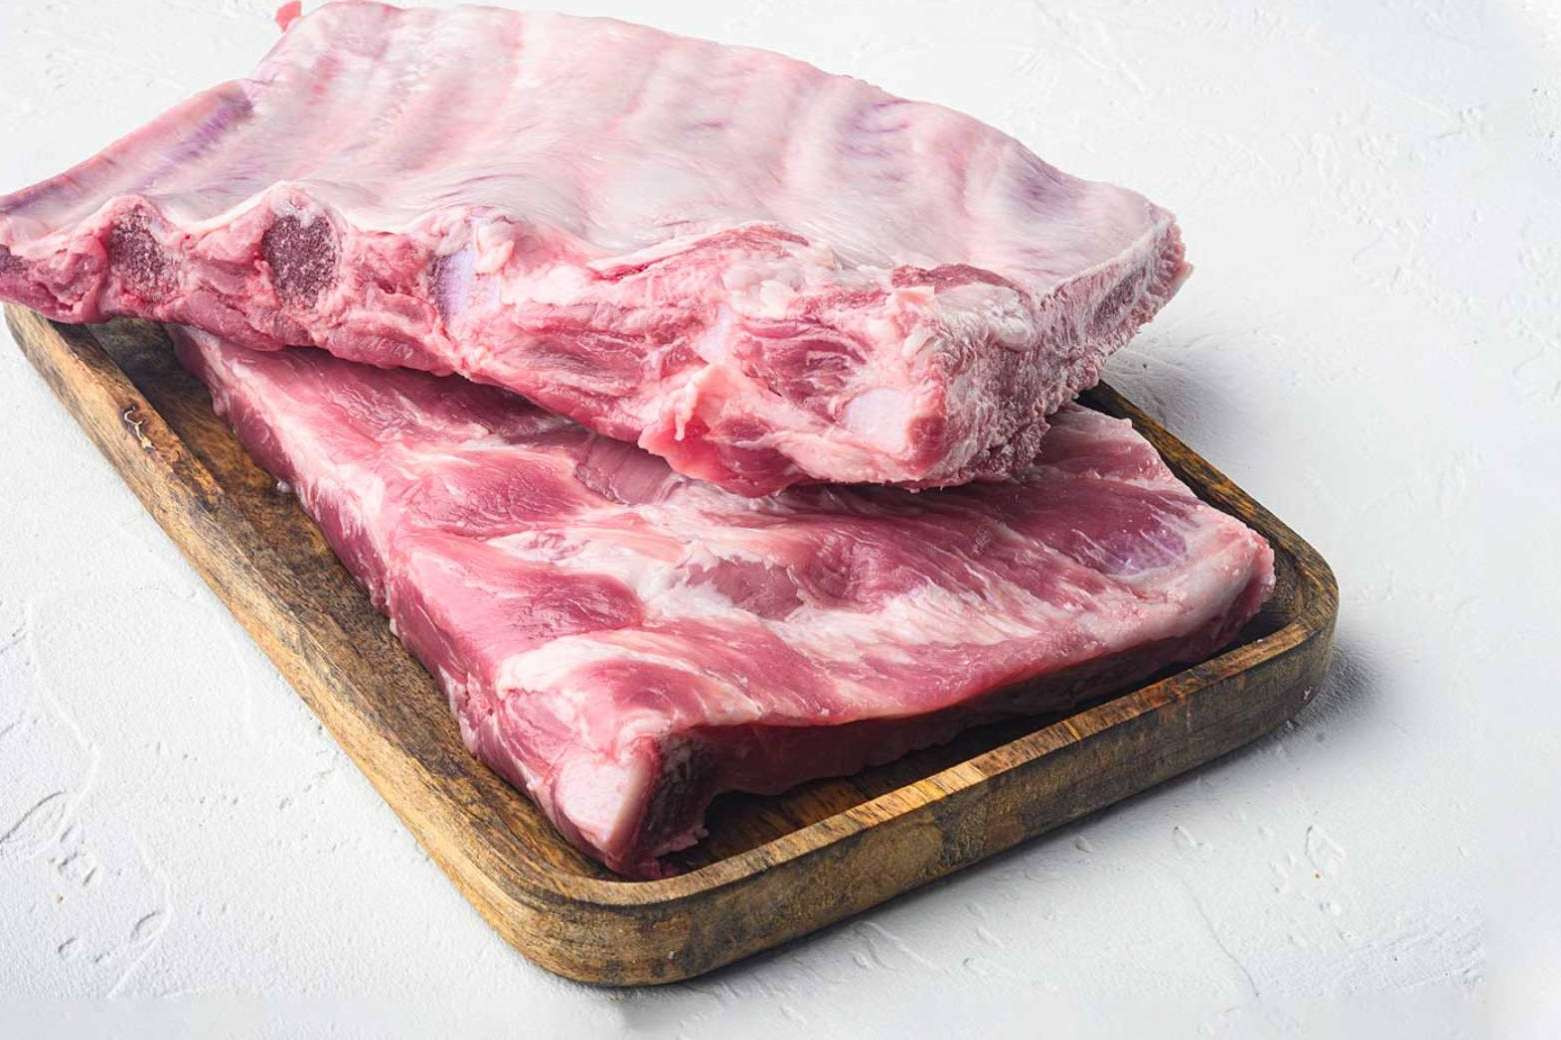  La carne de cerdo ecológico, la mejor inversión para la salud 